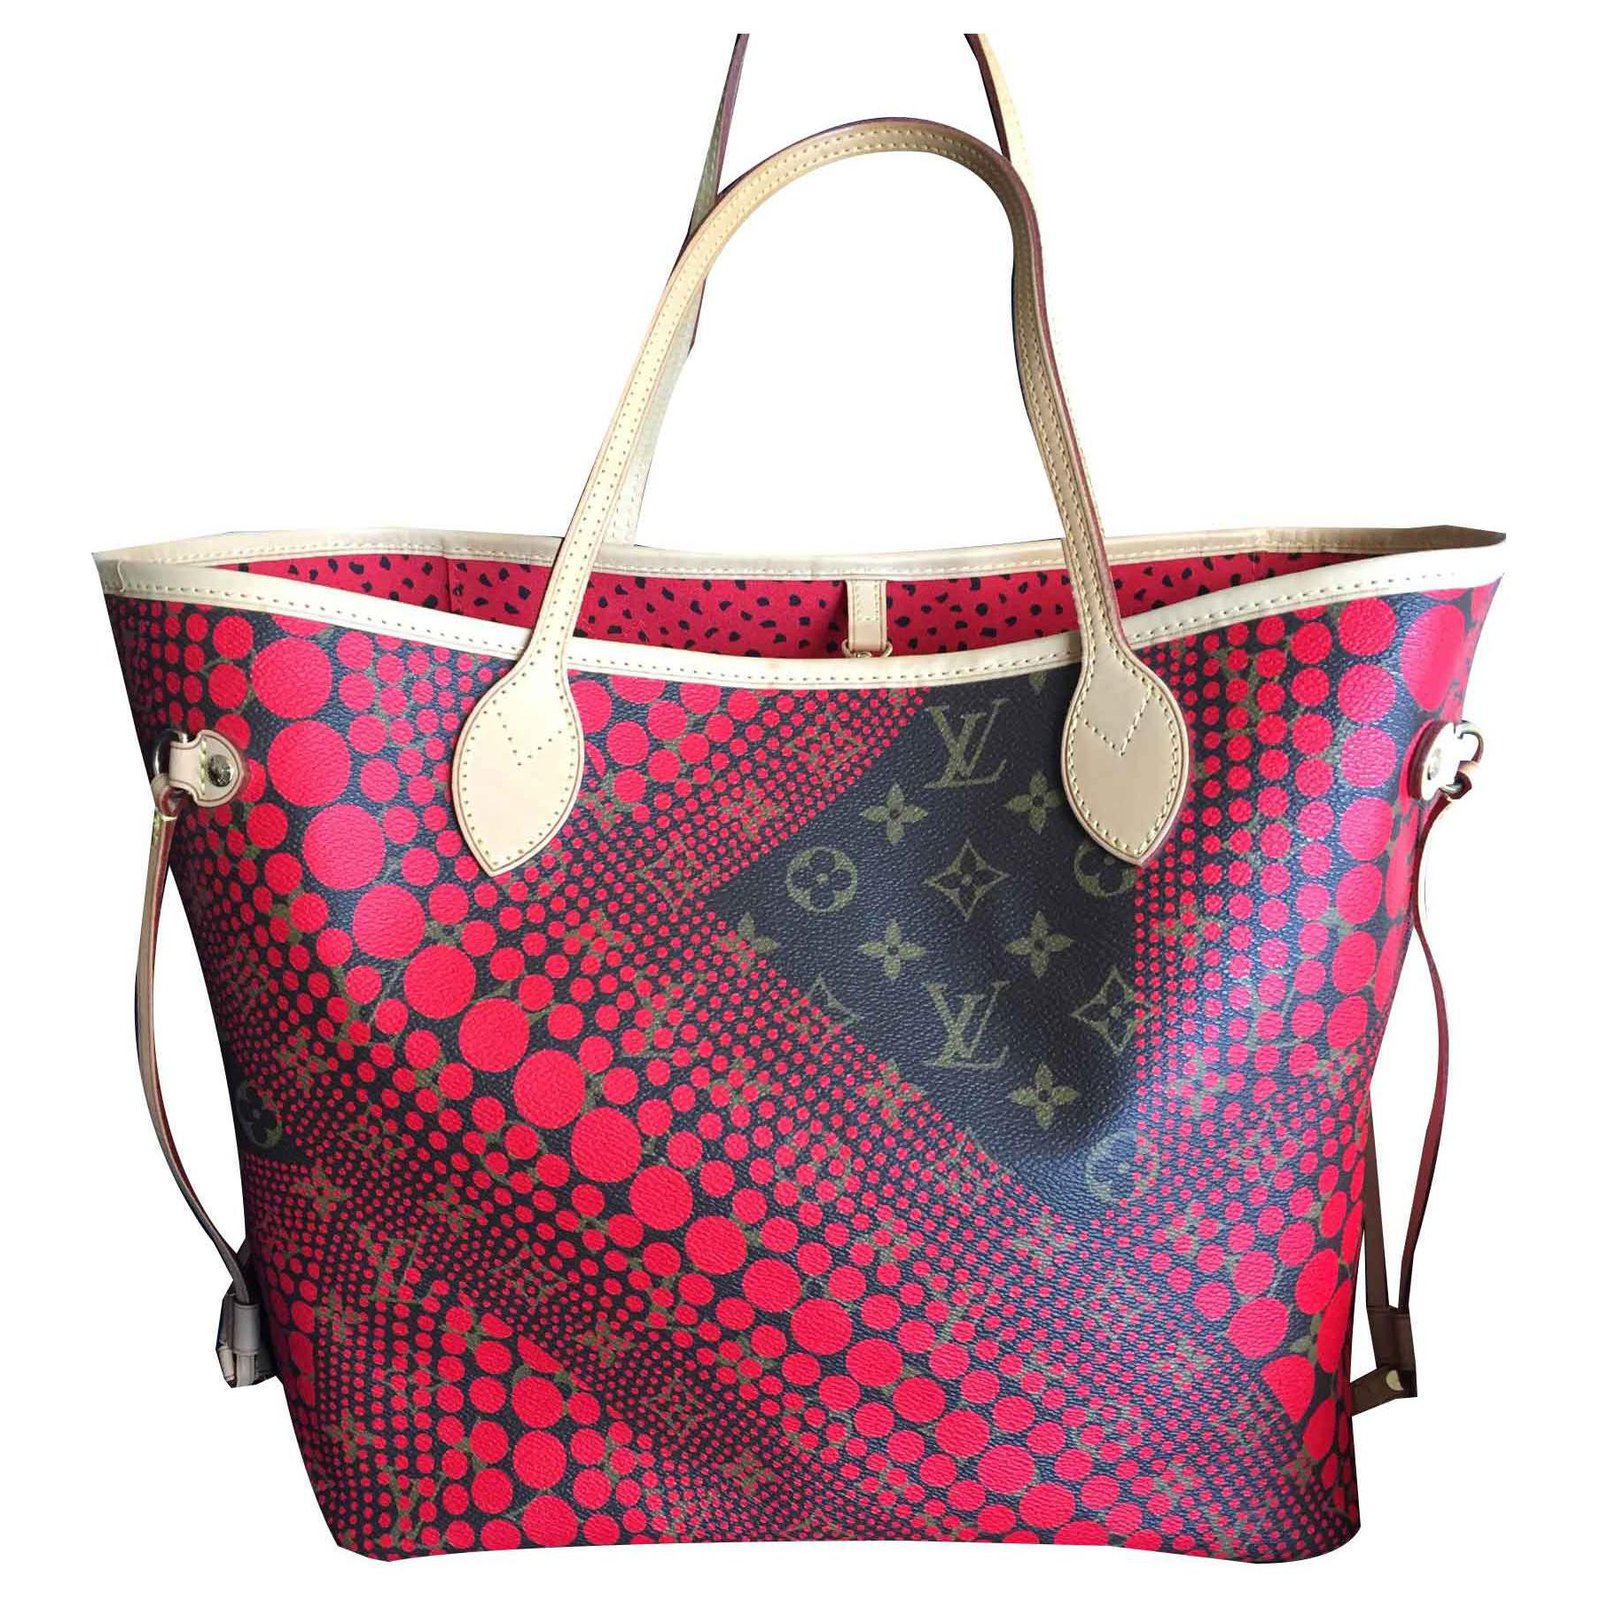 Yayoi - Louis Vuitton red dots \// louis vuitton handbags